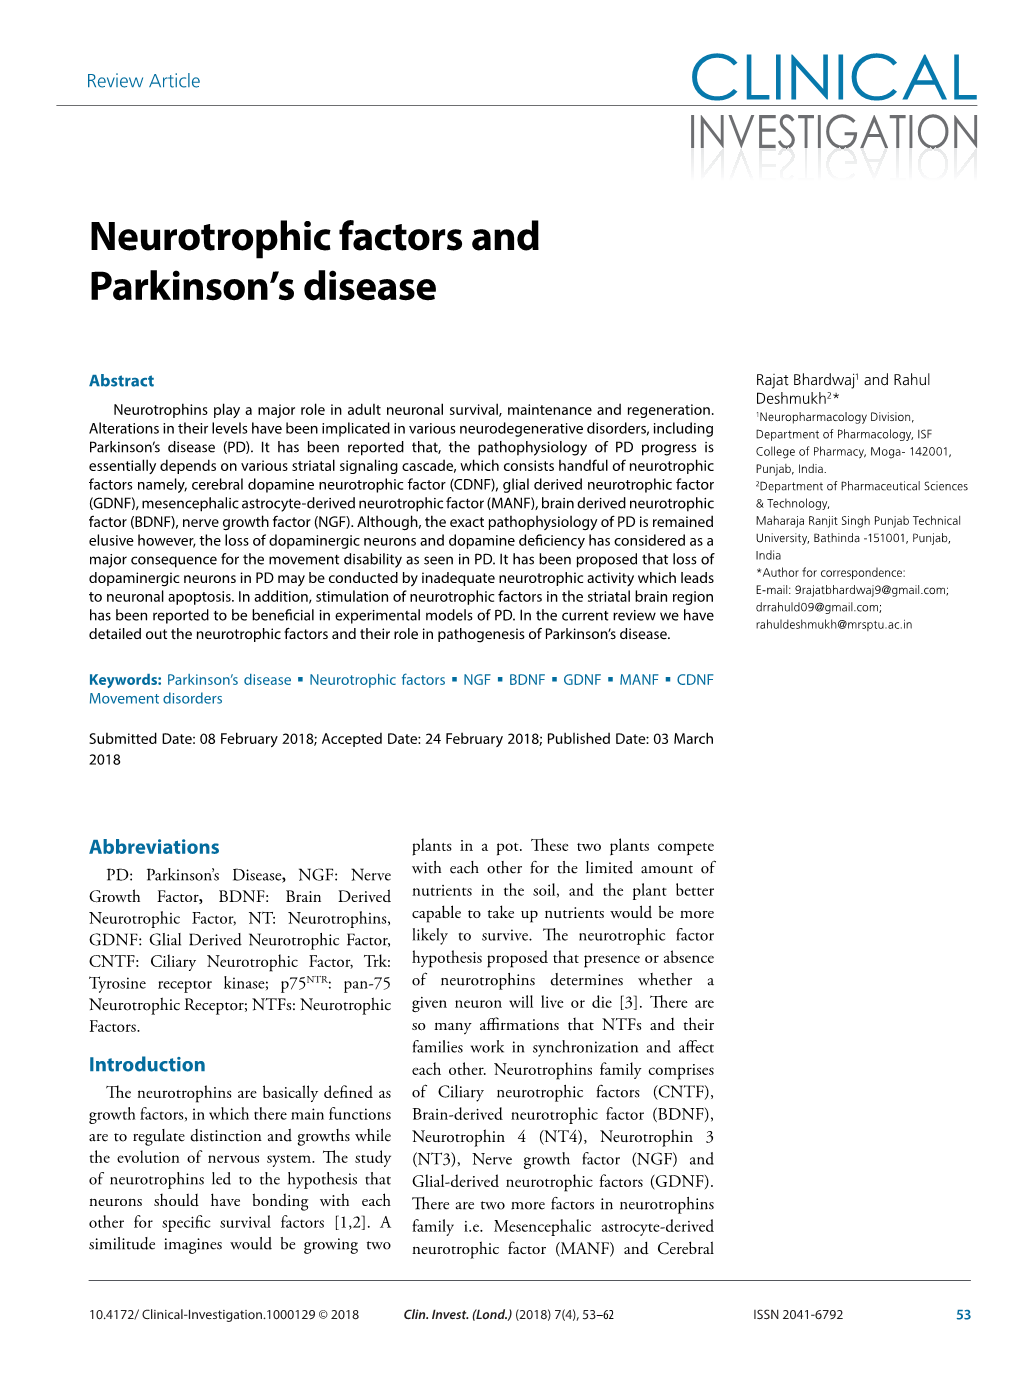 Neurotrophic Factors and Parkinson's Disease